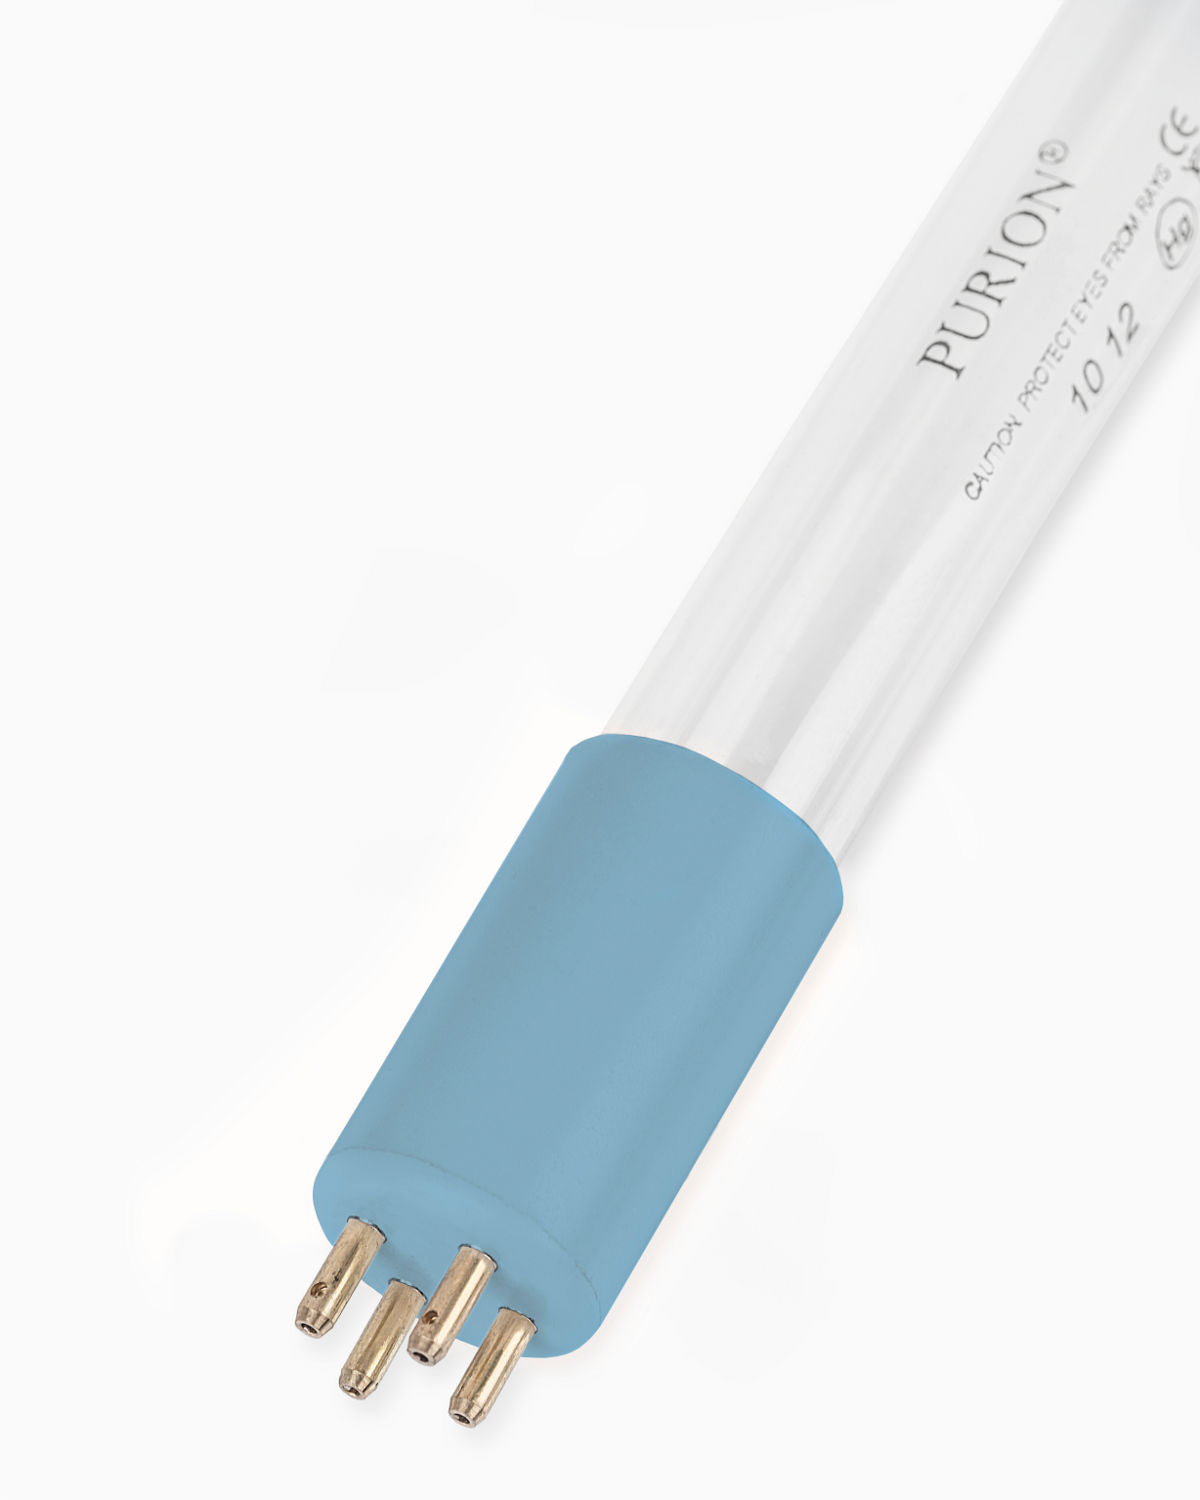 Eine blaue PURION 2001 OPD Extra UV-C-Desinfektionslichtröhre auf weißem Hintergrund.